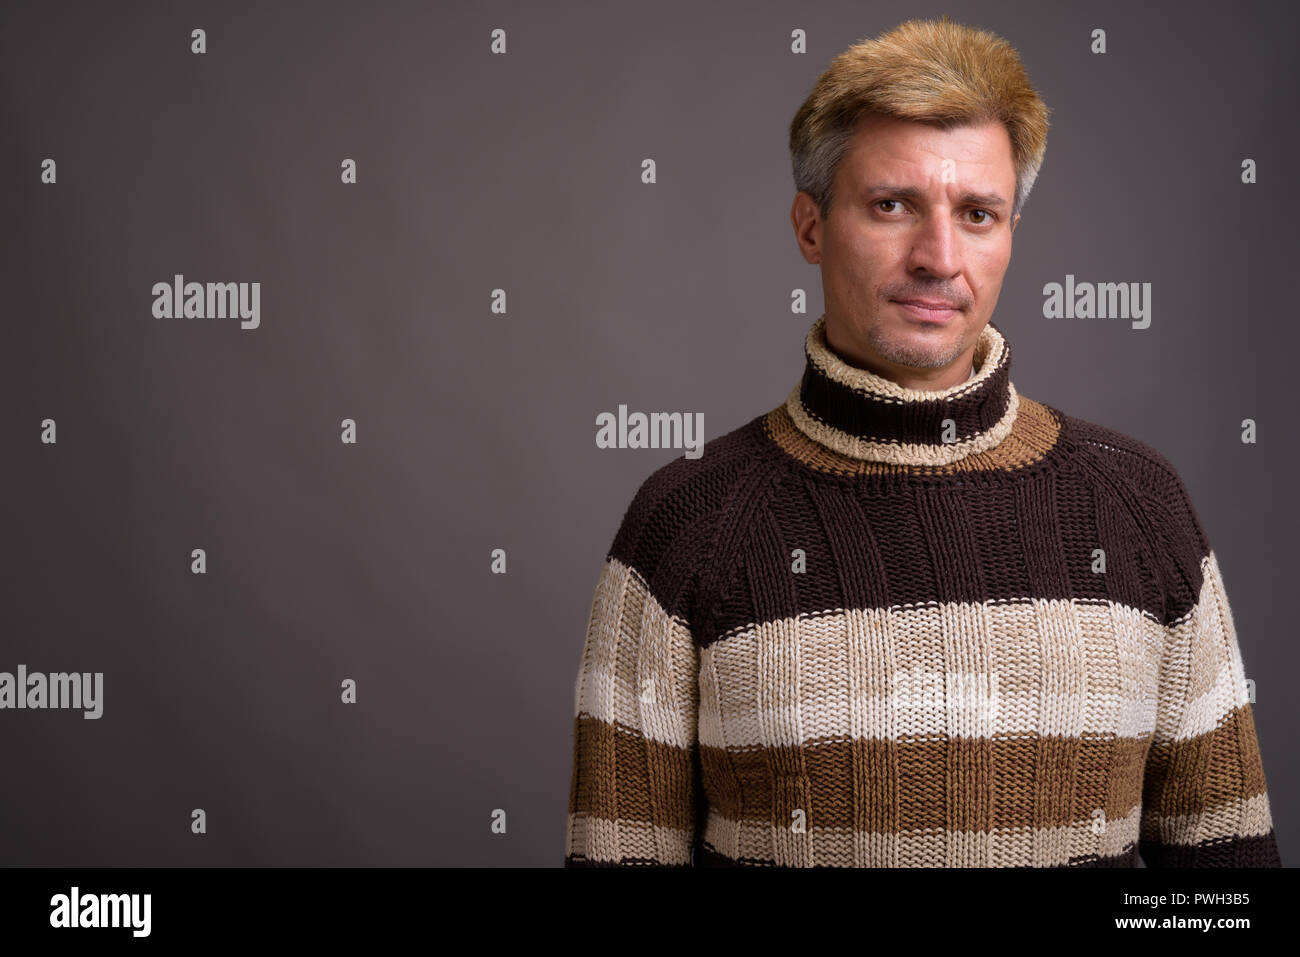 Uomo con capelli biondi che indossa un maglione turtleneck contro il dorso grigio Foto Stock